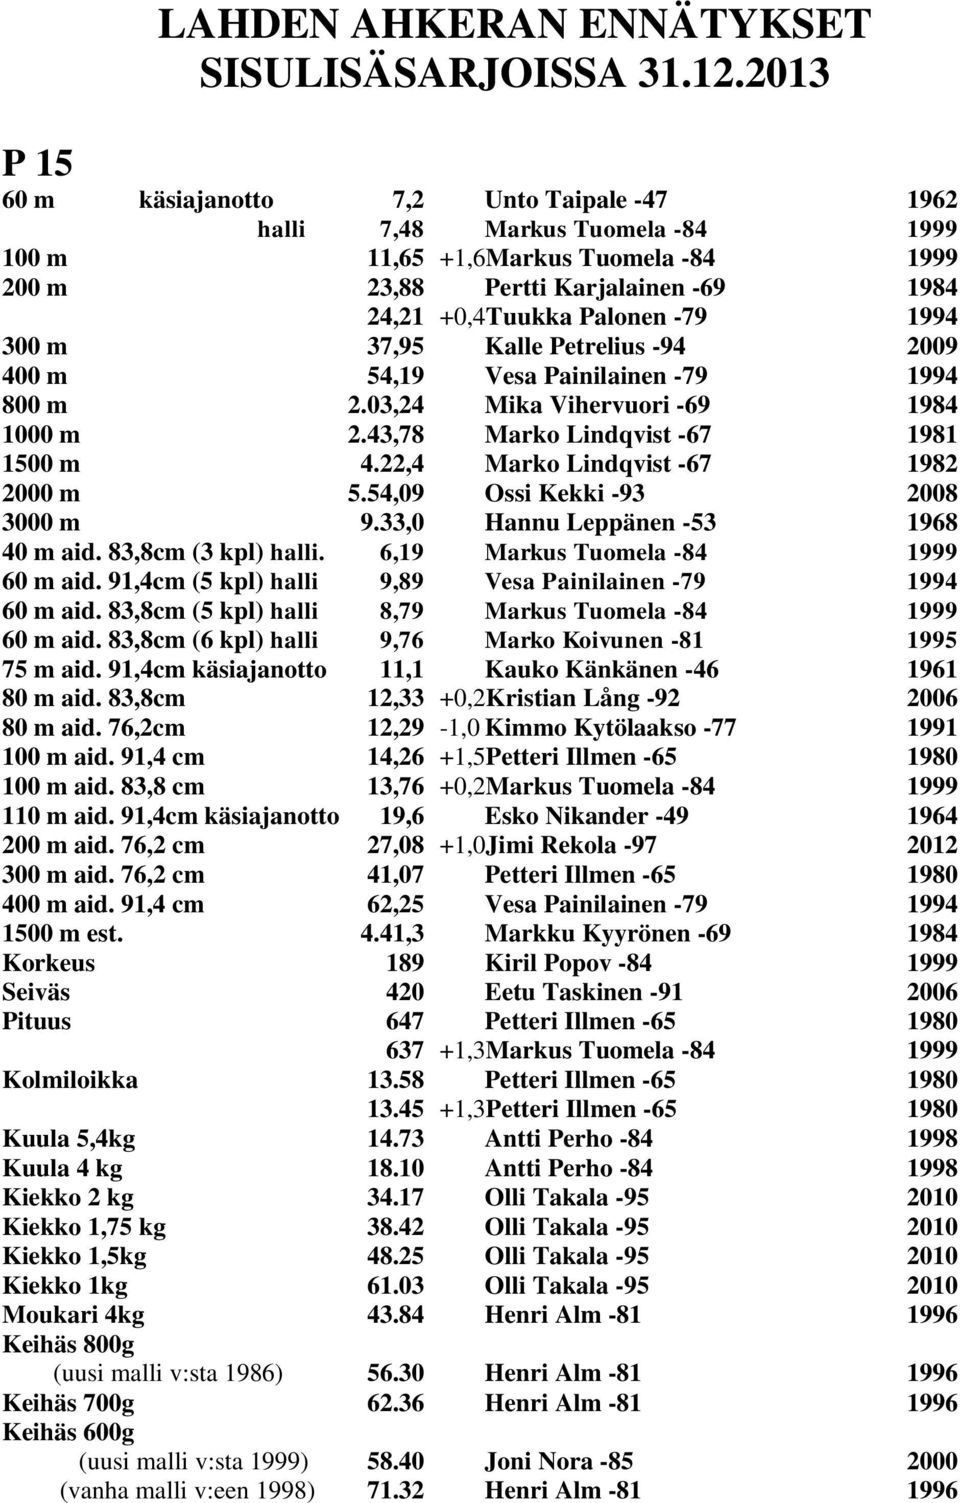 1994 300 m 37,95 Kalle Petrelius -94 2009 400 m 54,19 Vesa Painilainen -79 1994 800 m 2.03,24 Mika Vihervuori -69 1984 1000 m 2.43,78 Marko Lindqvist -67 1981 1500 m 4.